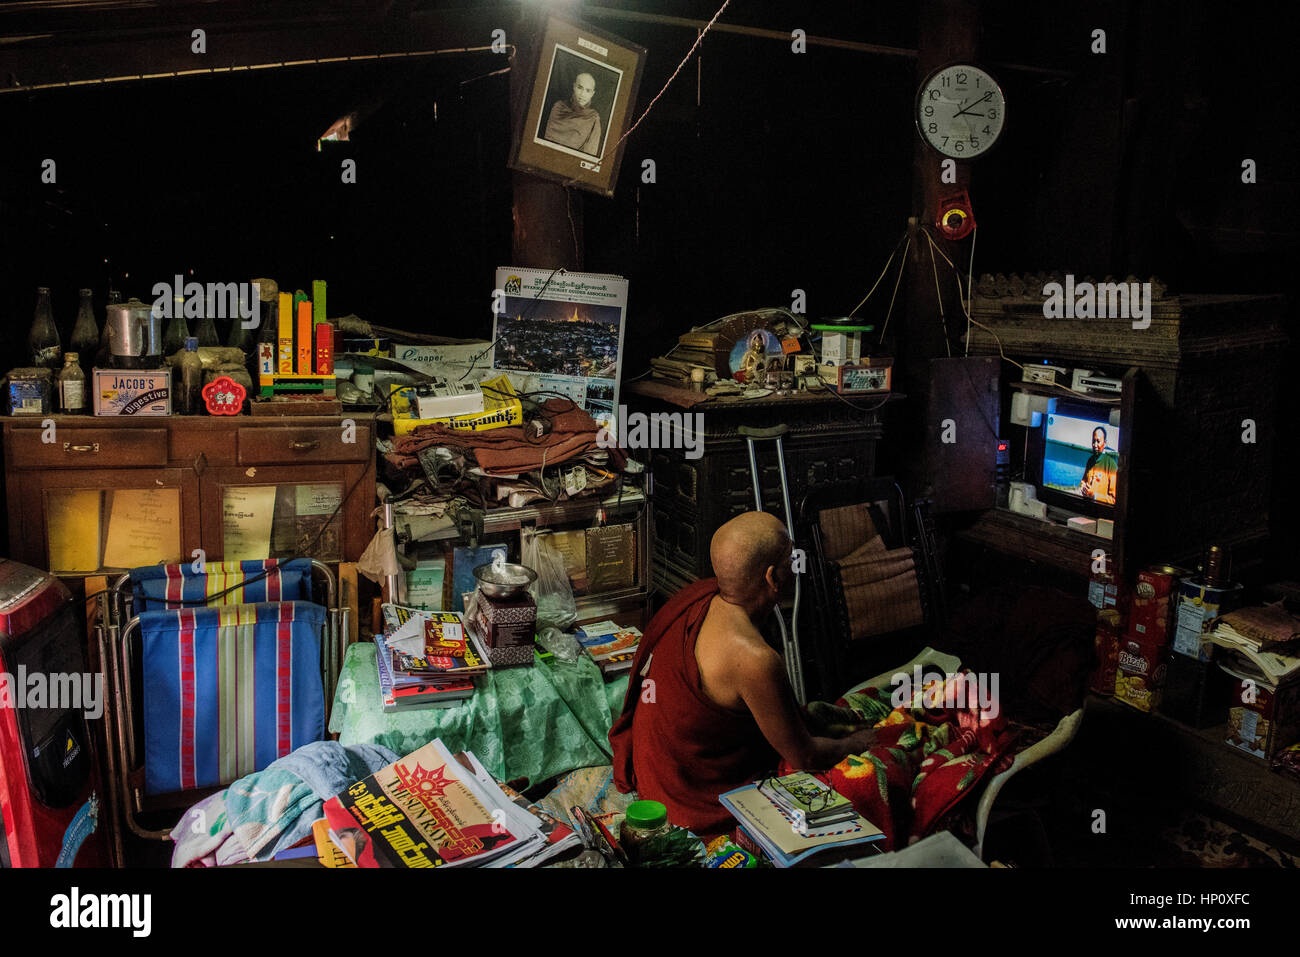 Un moine bouddhiste est assis à regarder la télévision entouré par ses effets personnels dans une partie de l'Bagaya Monastey Ava dans une ancienne capitale de la Birmanie Banque D'Images